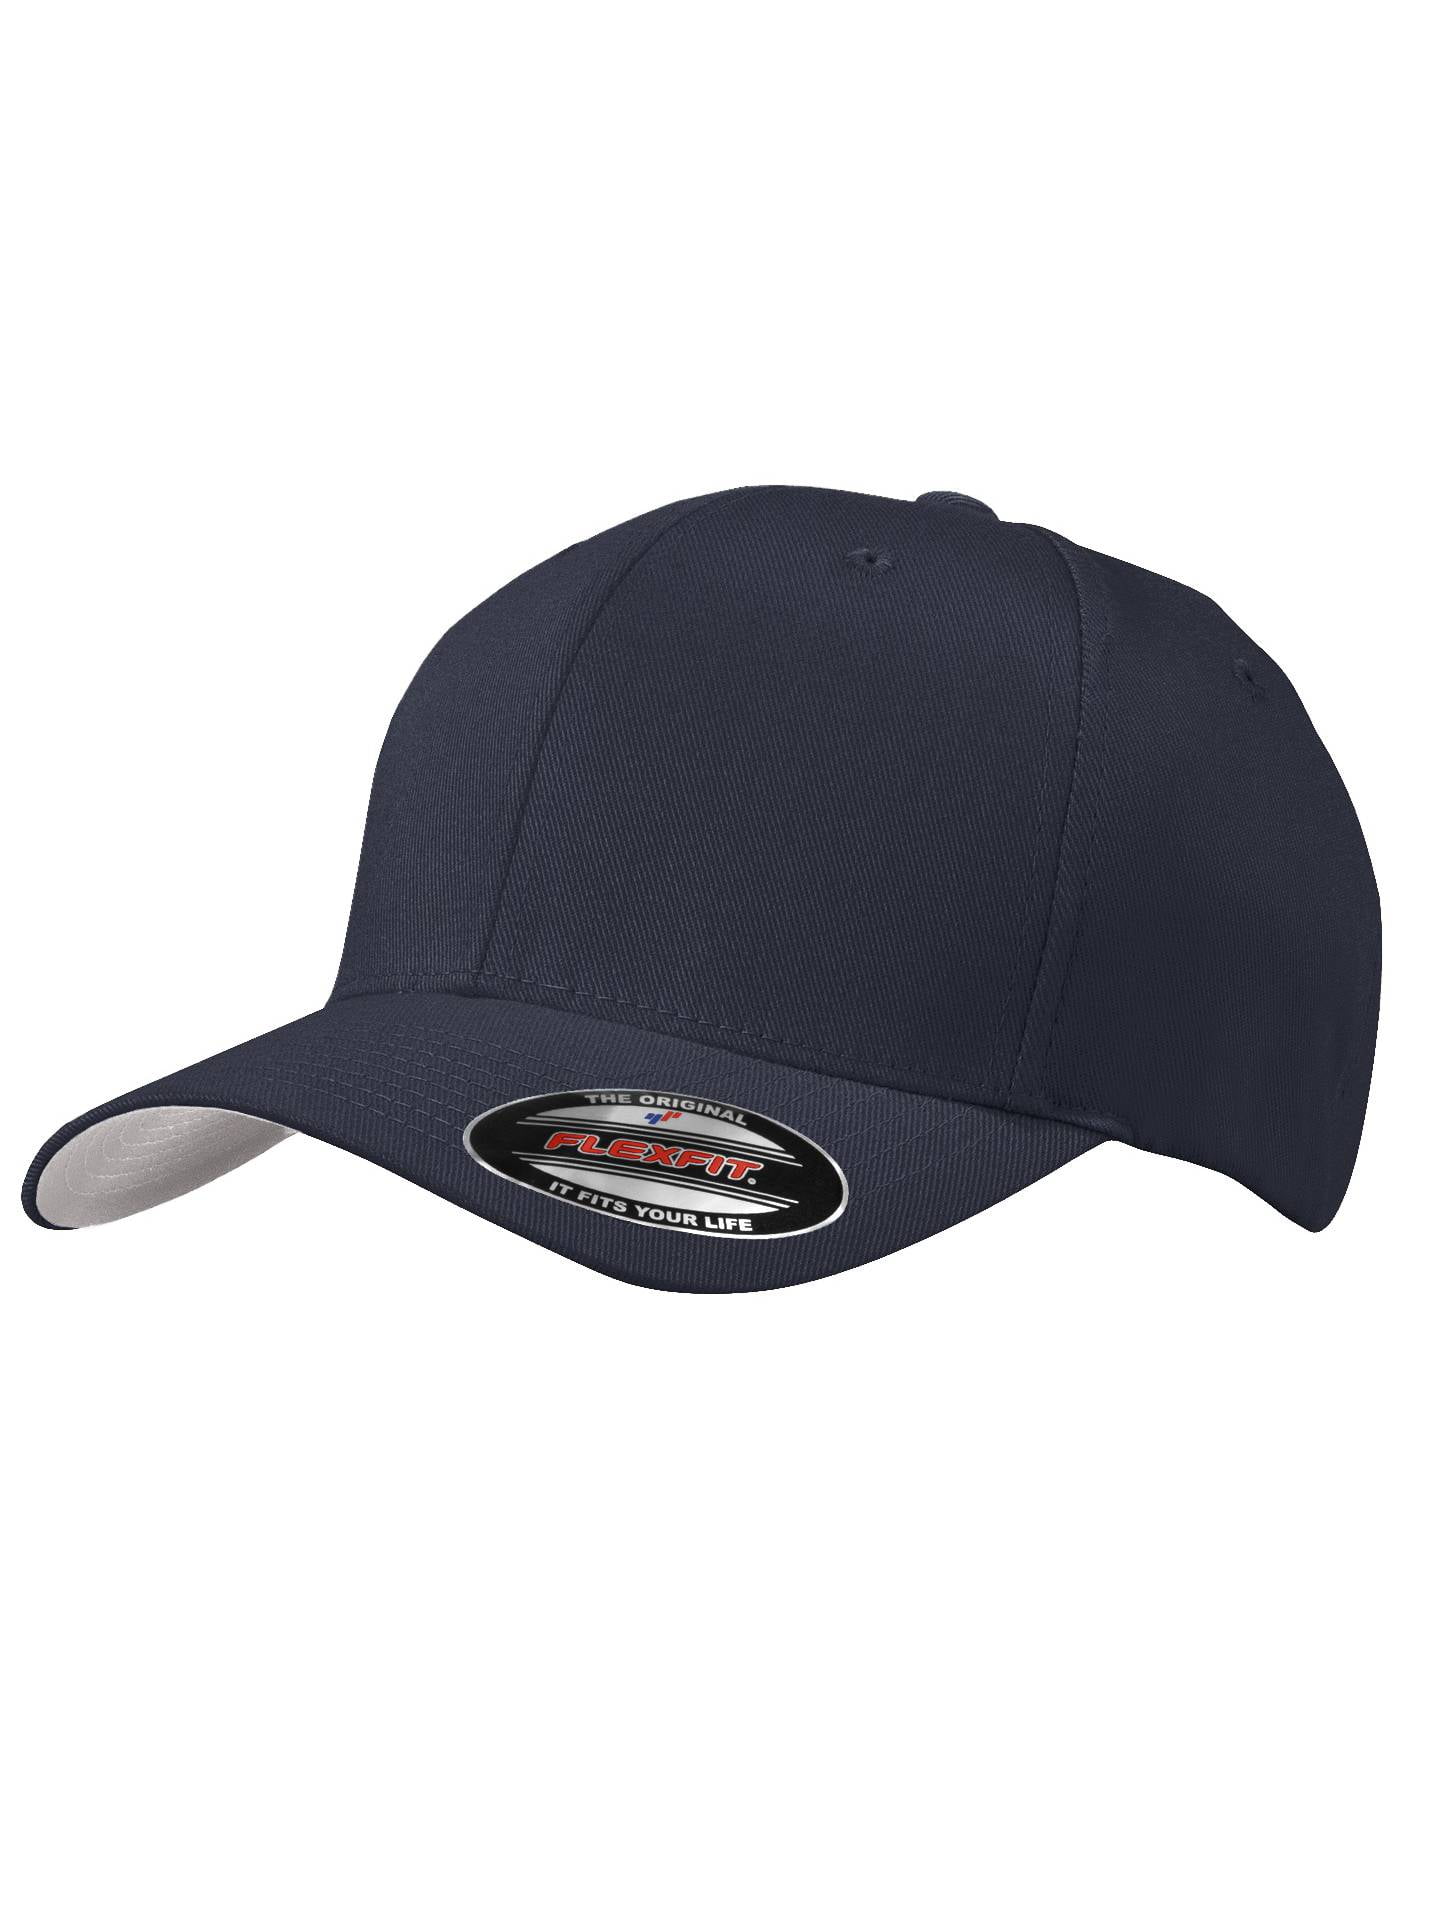 Top Small/Medium Flex Drab/Green - Fit - Baseball Olive Cap Headwear